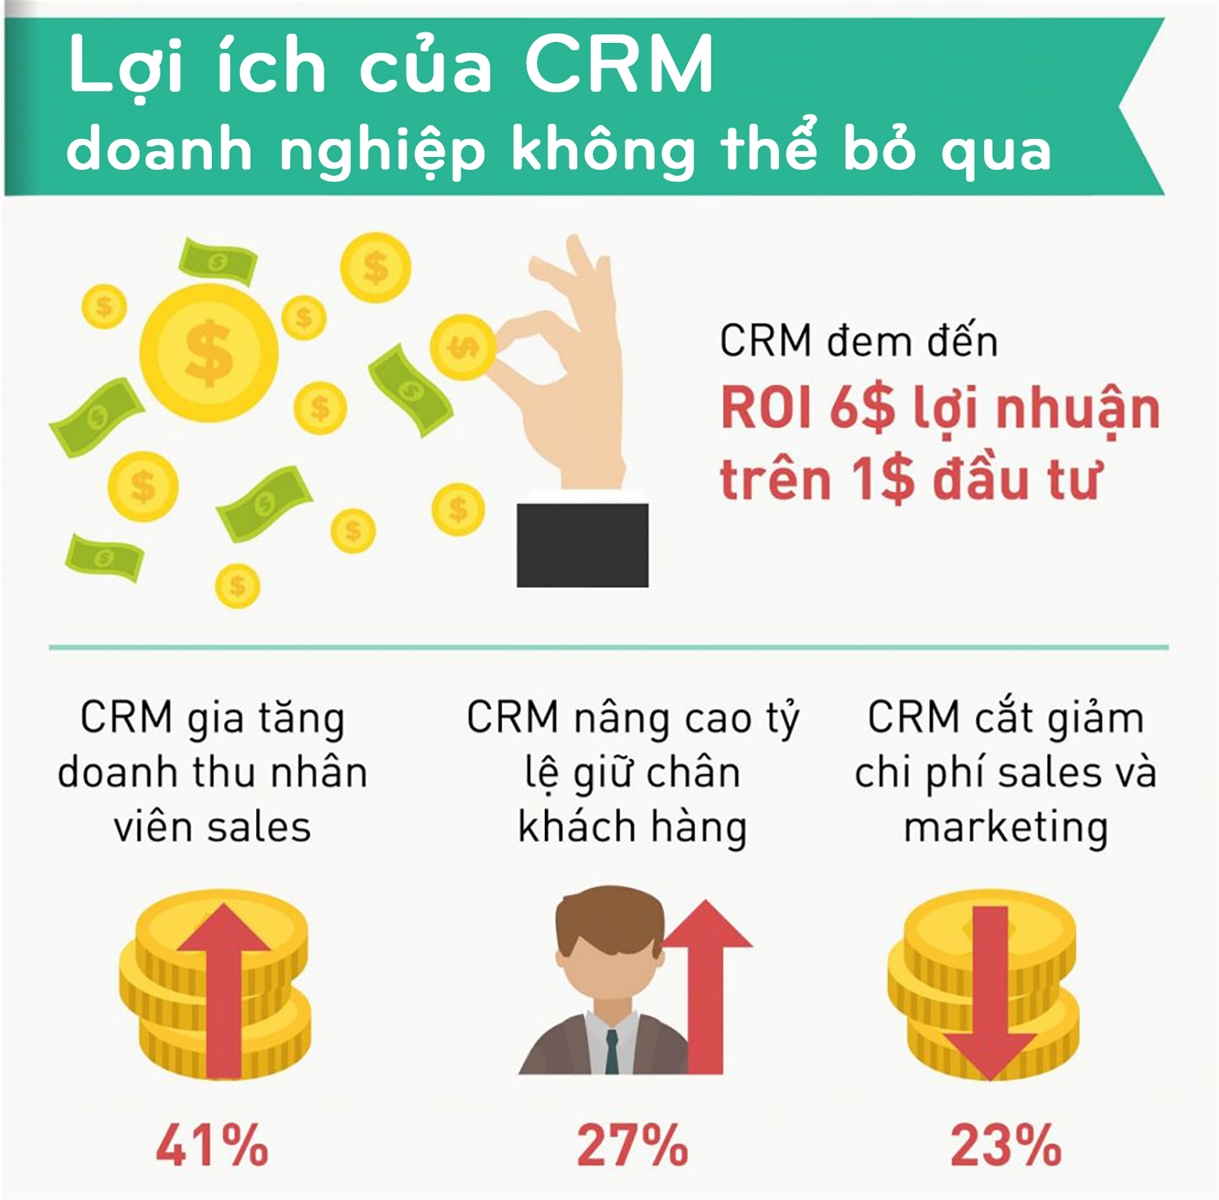 [Infographic] Lợi ích của CRM doanh nghiệp không thể bỏ qua